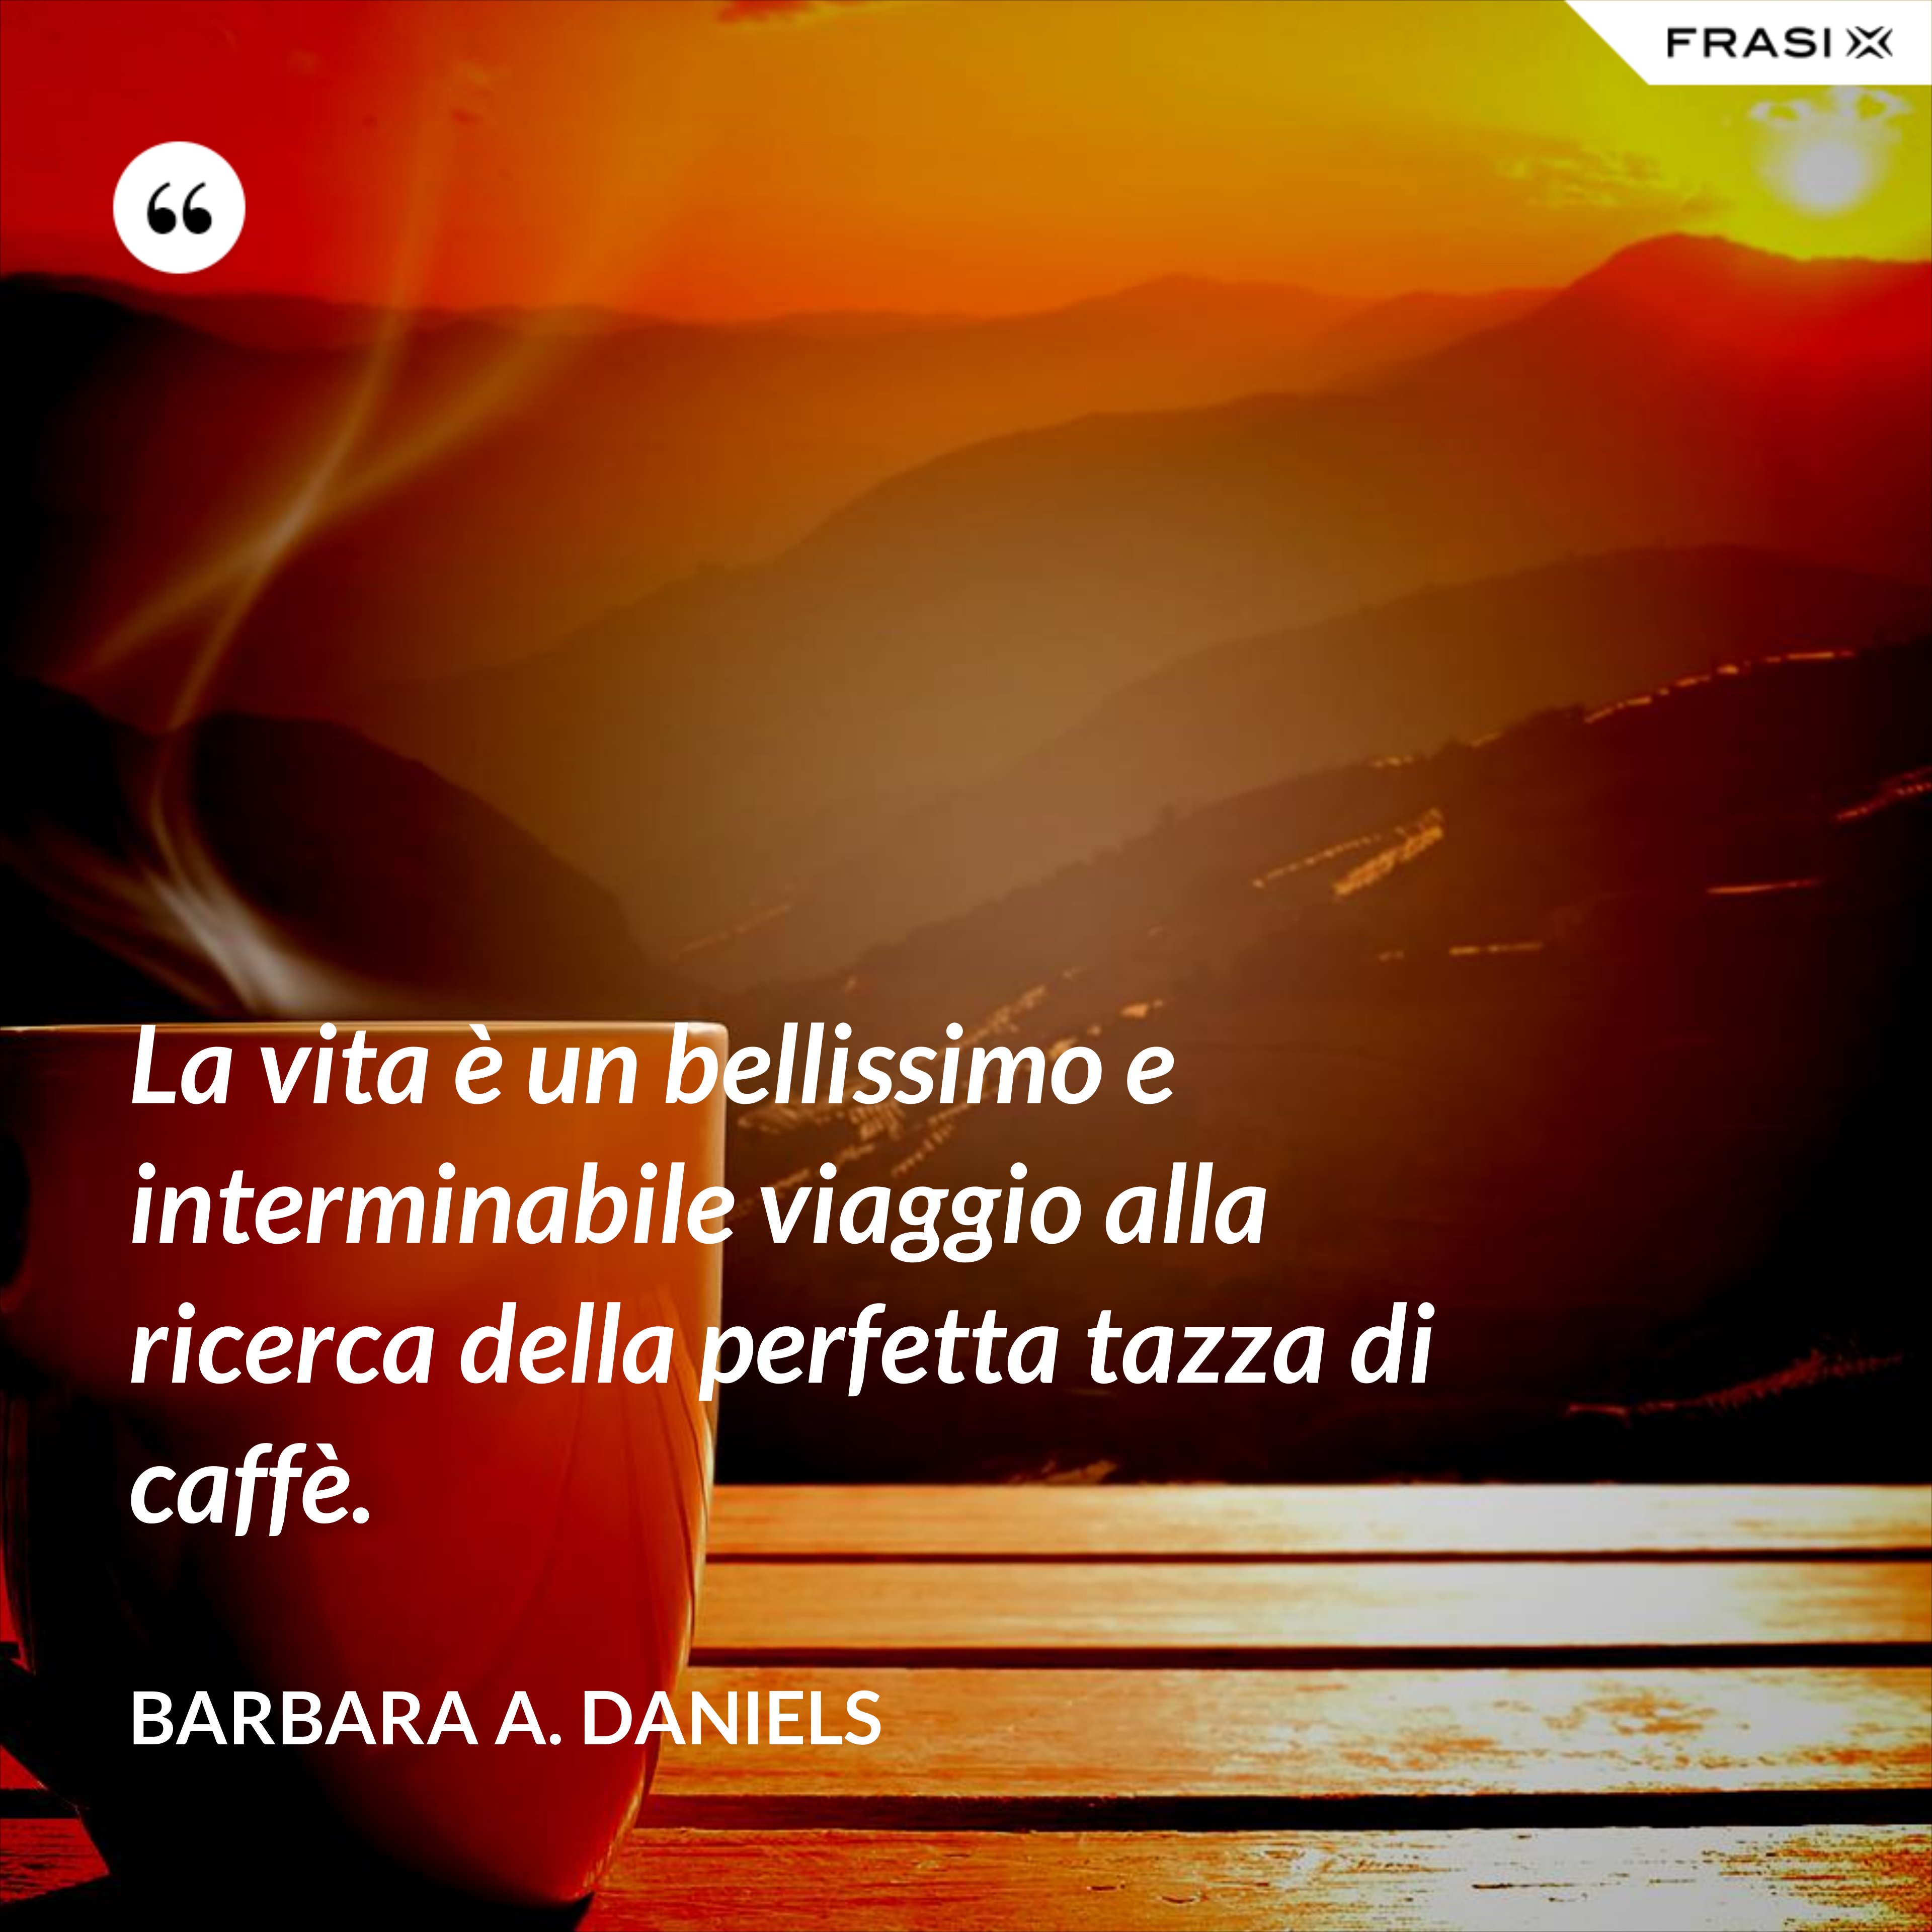 La vita è un bellissimo e interminabile viaggio alla ricerca della perfetta tazza di caffè. - Barbara A. Daniels